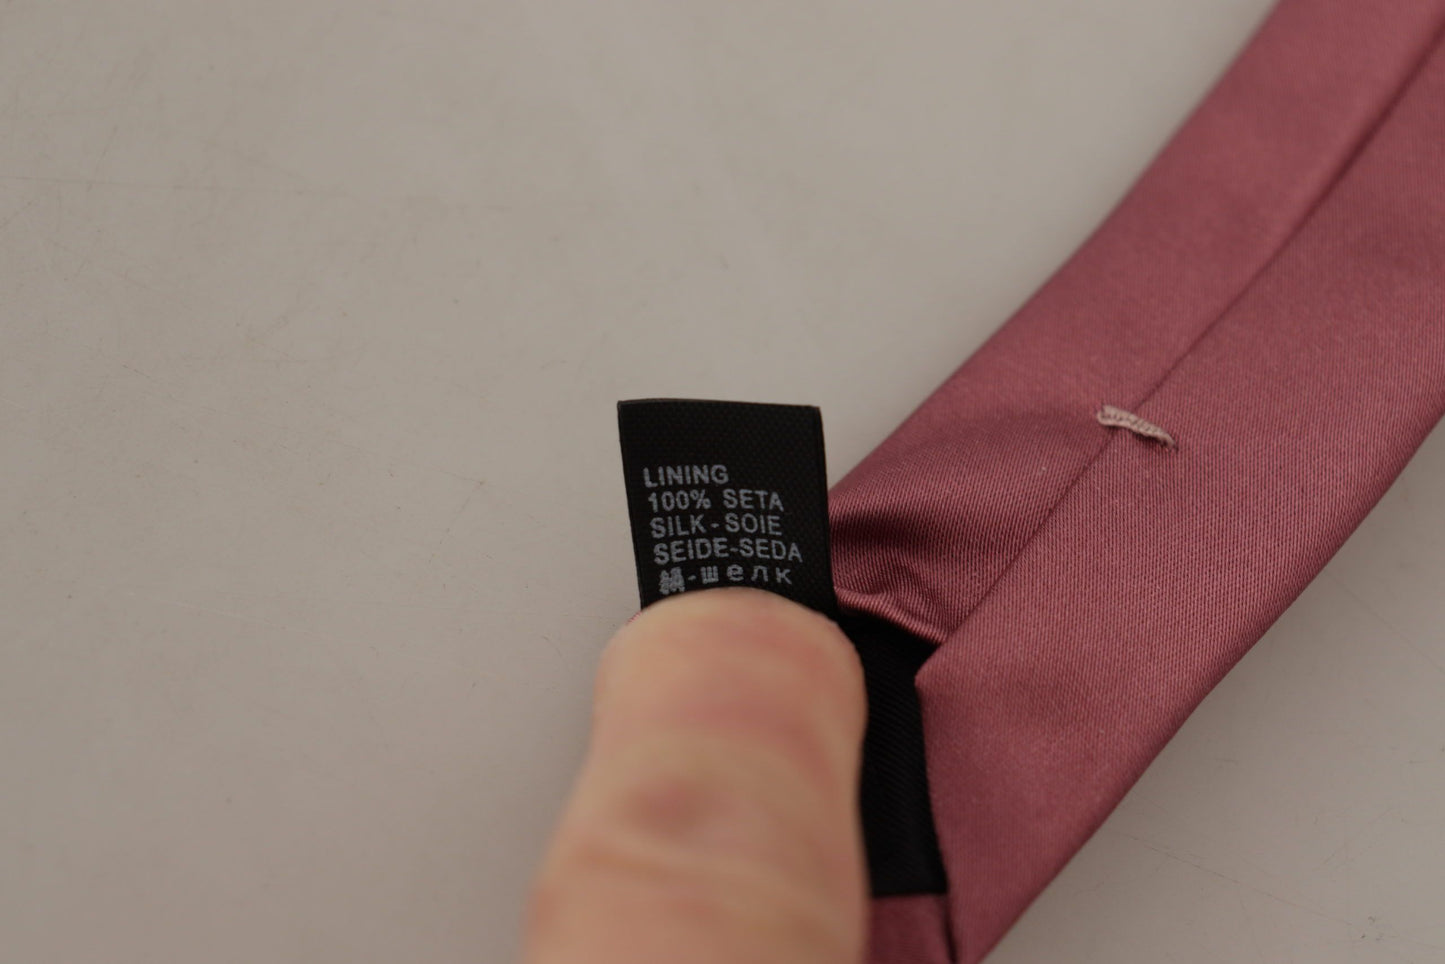 Dolce & Gabbana rose solide imprimer en soie à cravate à cravate réglable